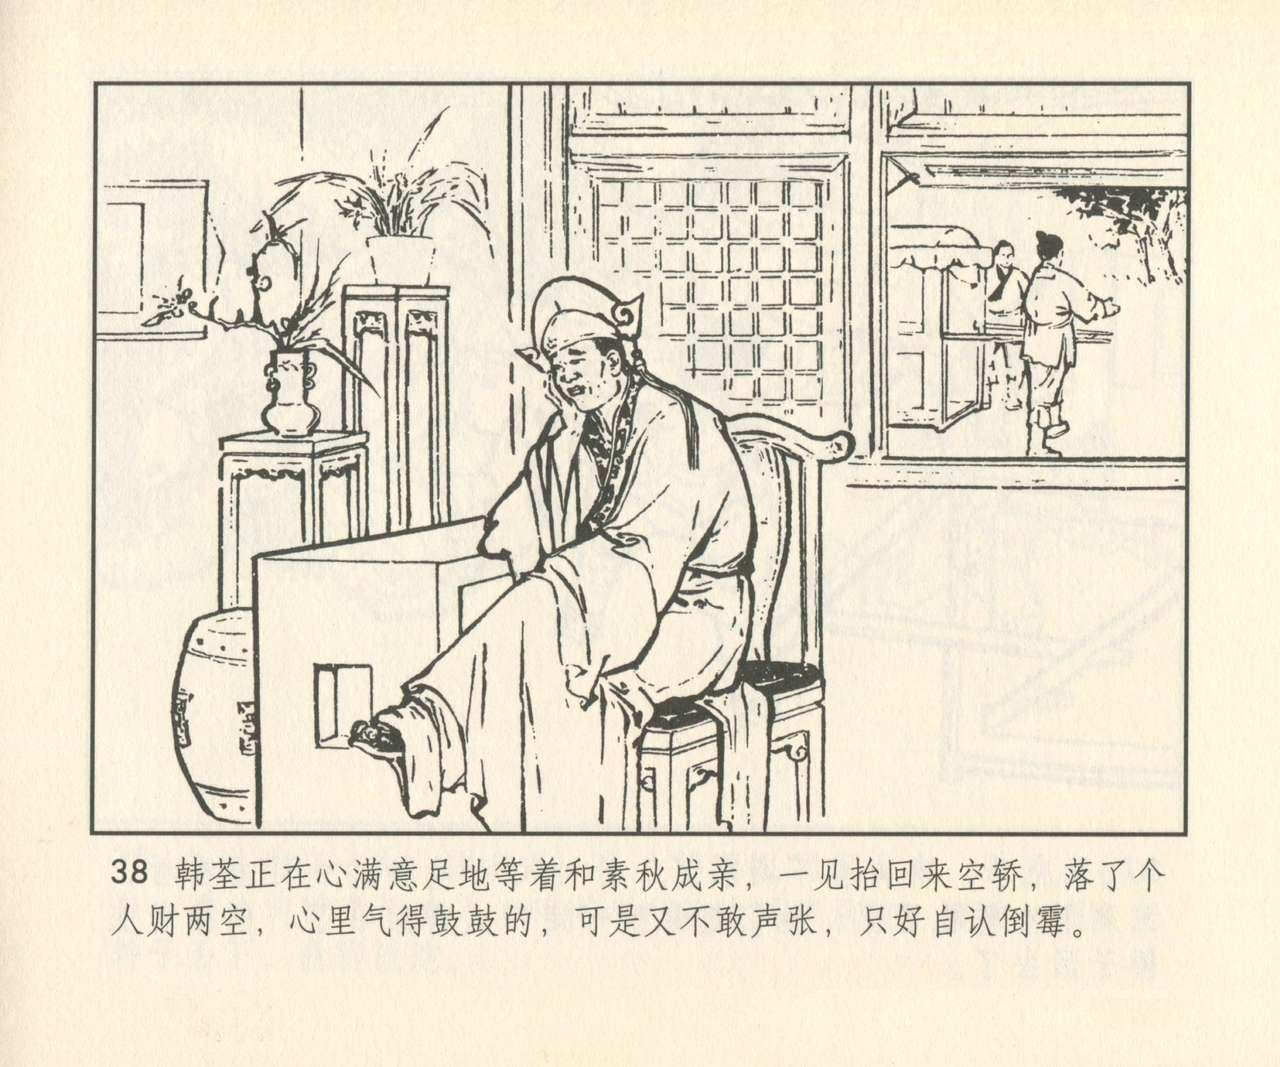 聊斋志异 张玮等绘 天津人民美术出版社 卷二十一 ~ 三十 318